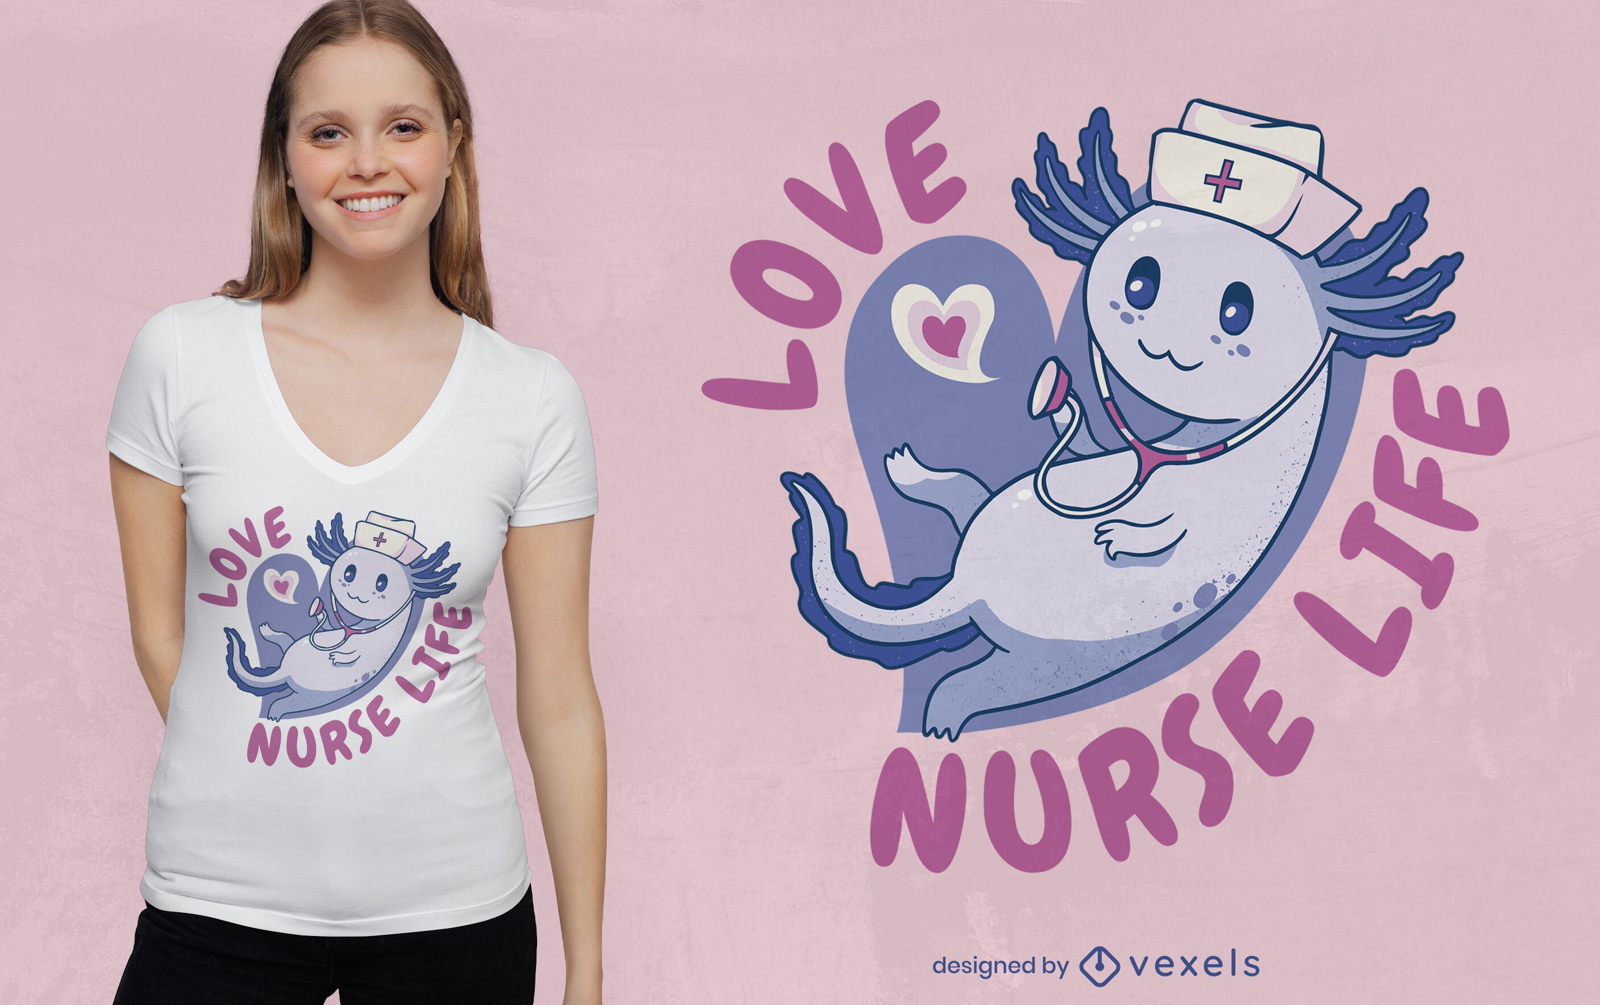 Axolotl nurse t-shirt design